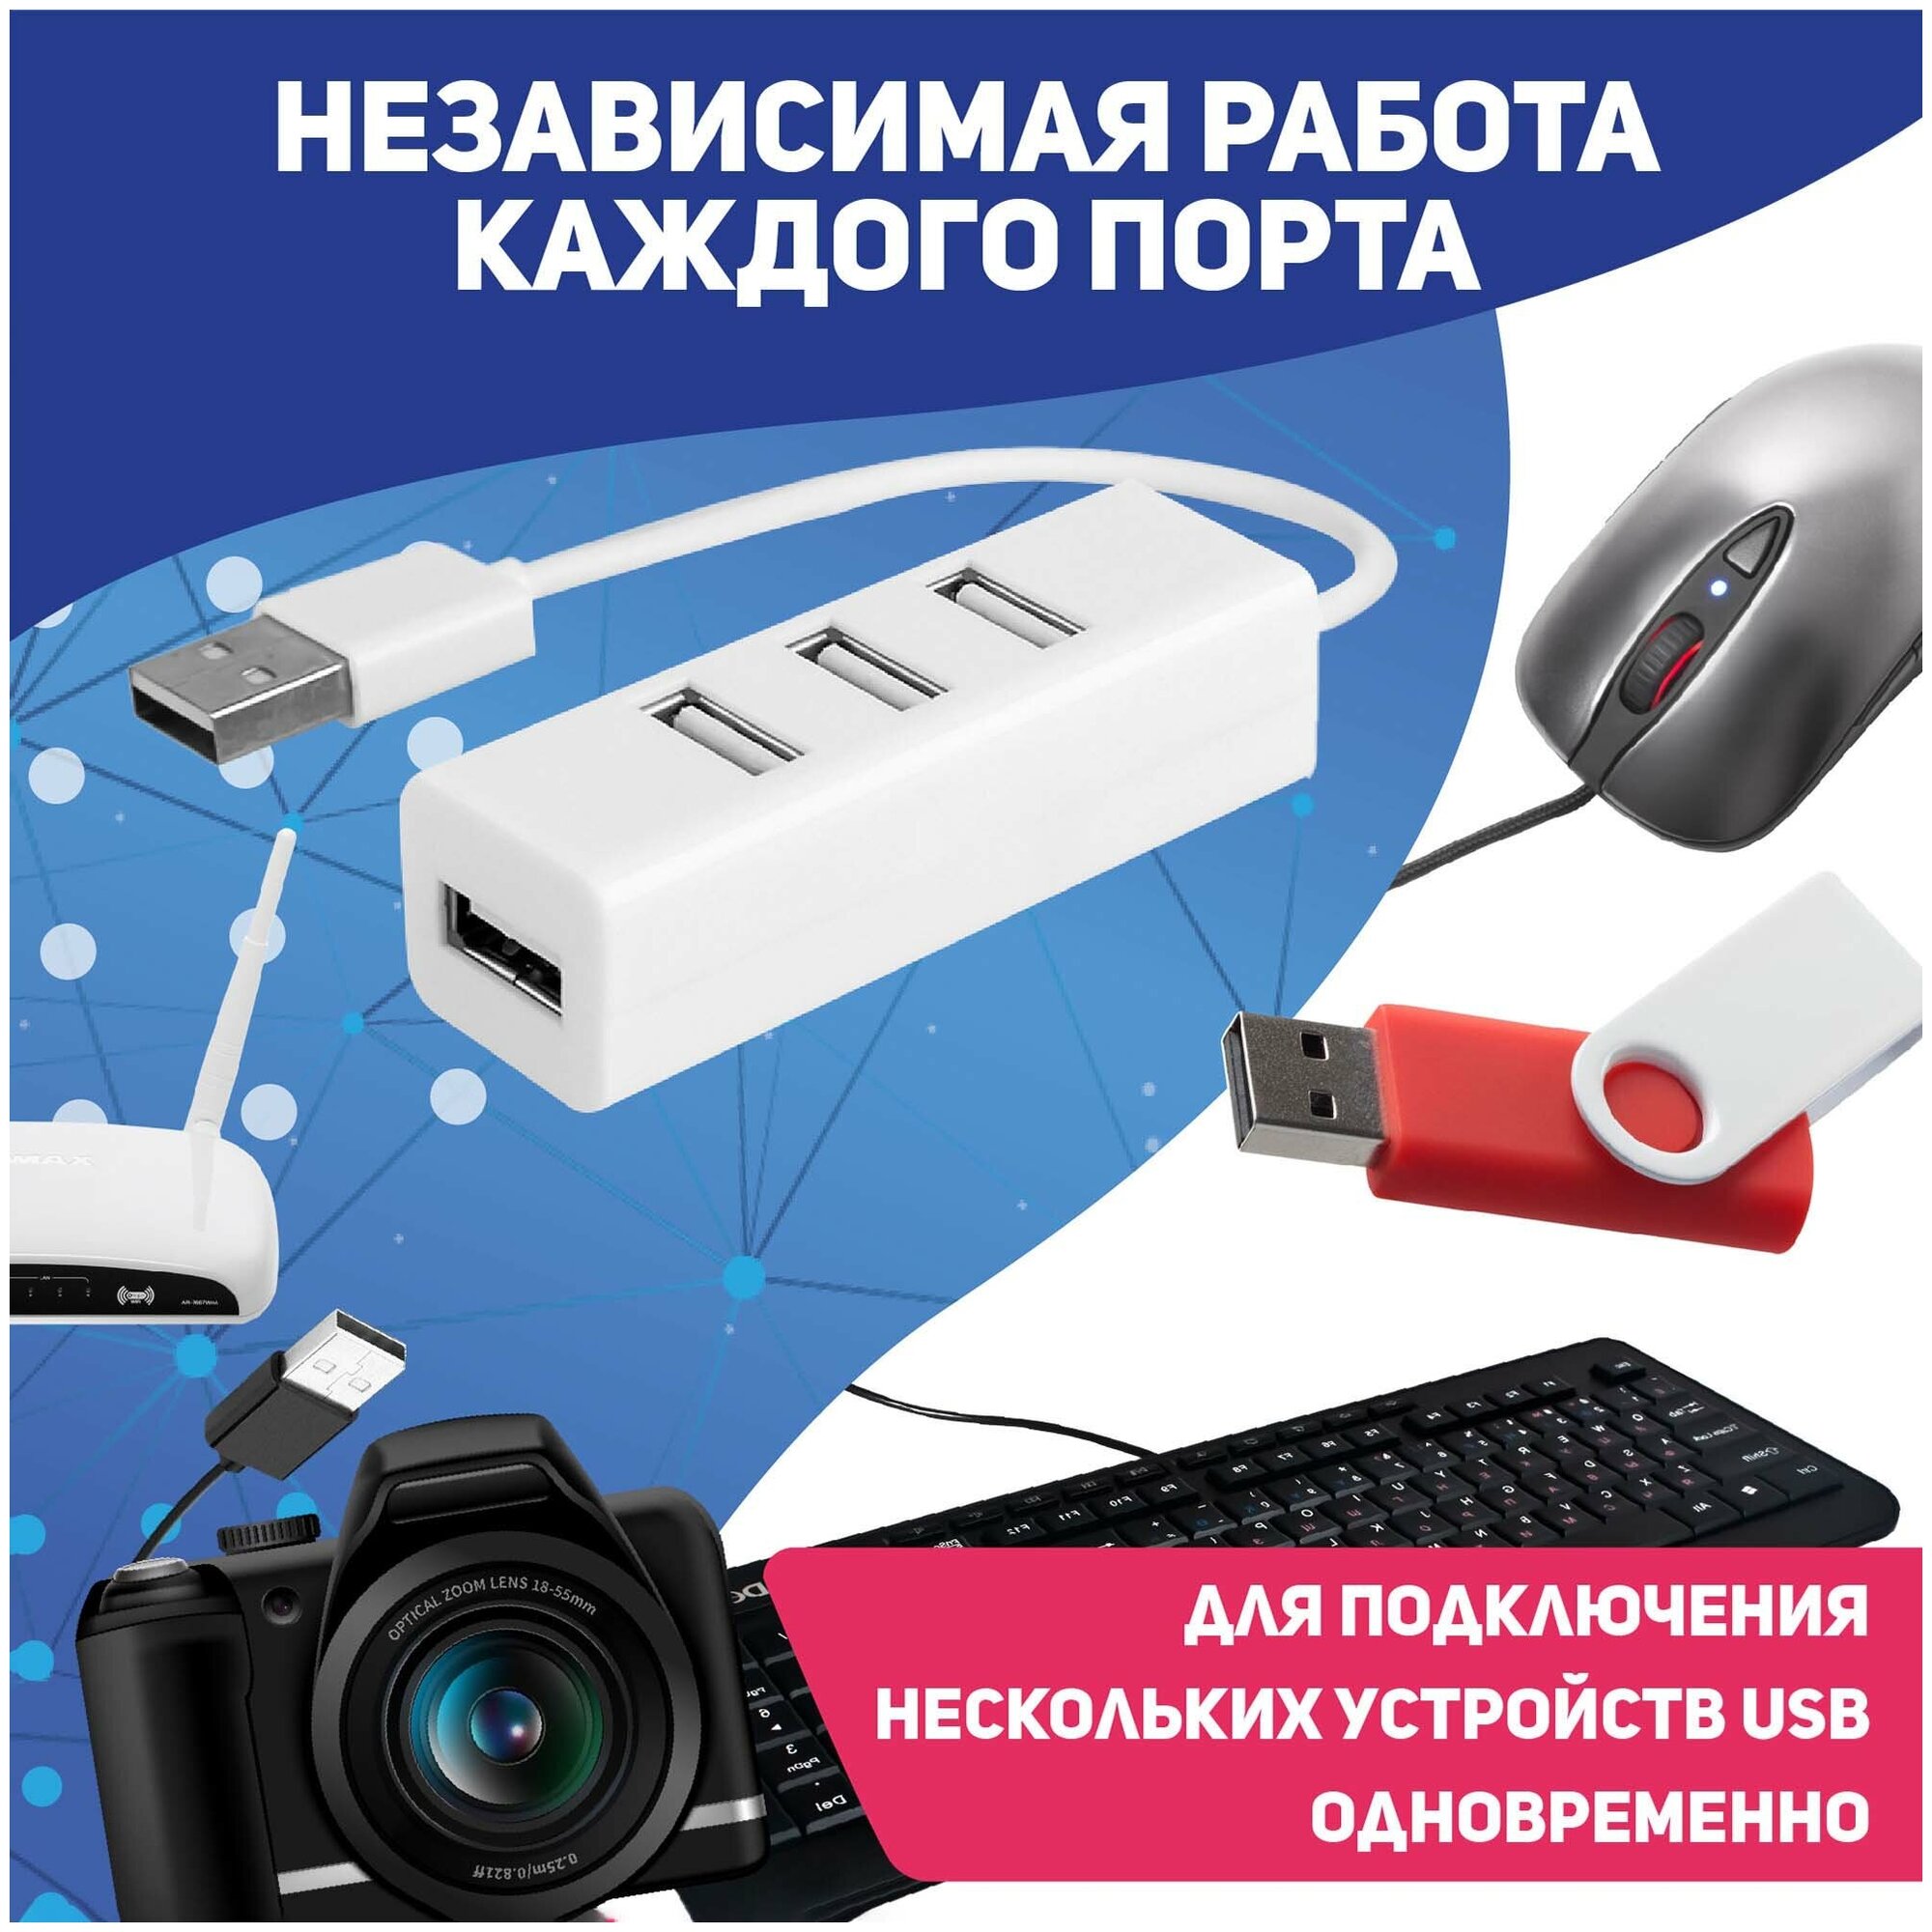 USB-концентратор USB 2.0 на 4 порта 480 Мбит/сек / HUB разветвитель / Хаб на 4 USB (0,1 м) / черный